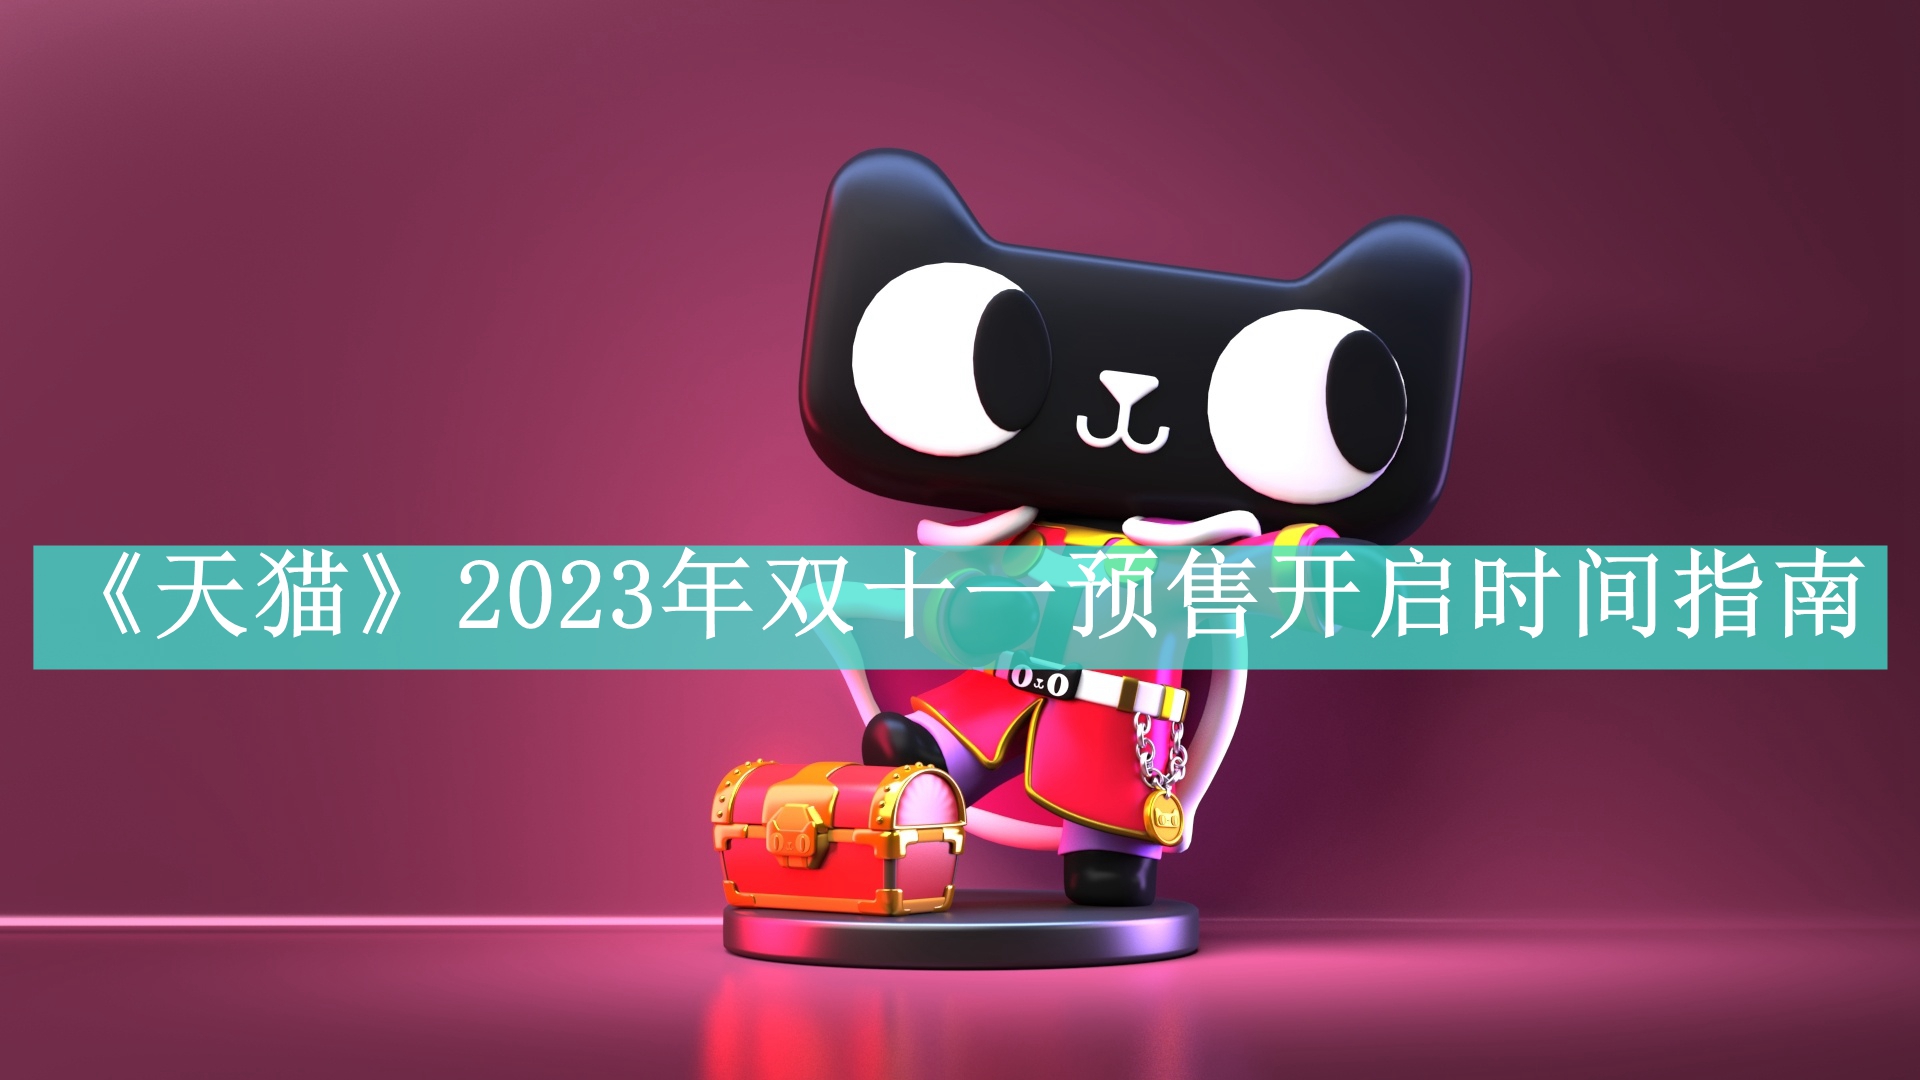 《天猫》2023年双十一预售开启时间指南